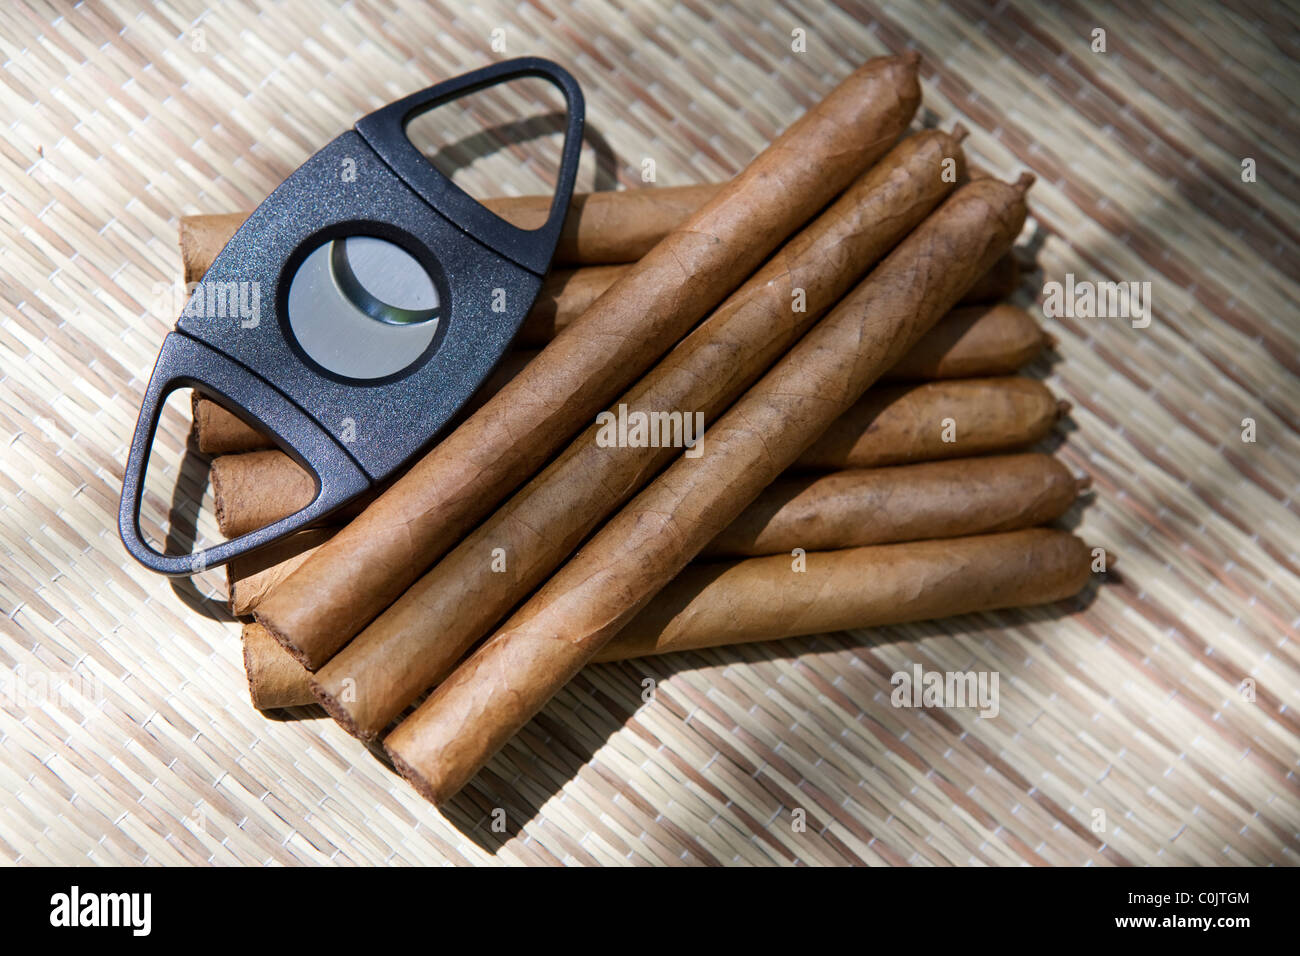 Taglia sigari immagini e fotografie stock ad alta risoluzione - Alamy